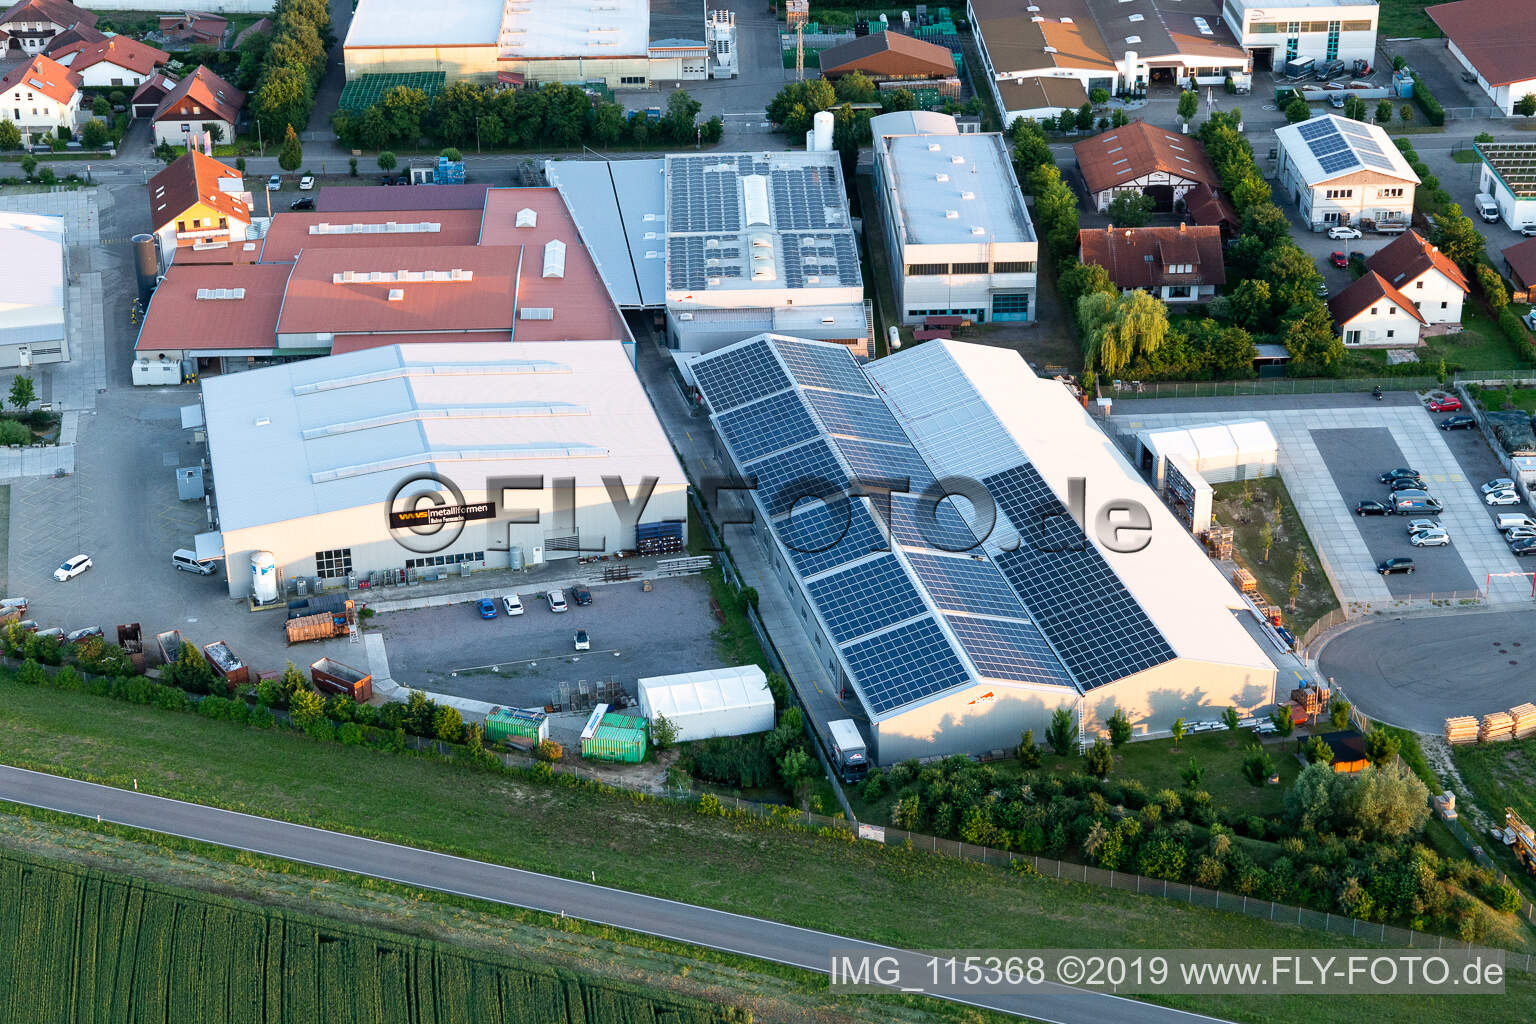 Gewerbergebiet Im Gereut, HGGS LaserCUT GmbH & Co. KG in Hatzenbühl im Bundesland Rheinland-Pfalz, Deutschland von der Drohne aus gesehen